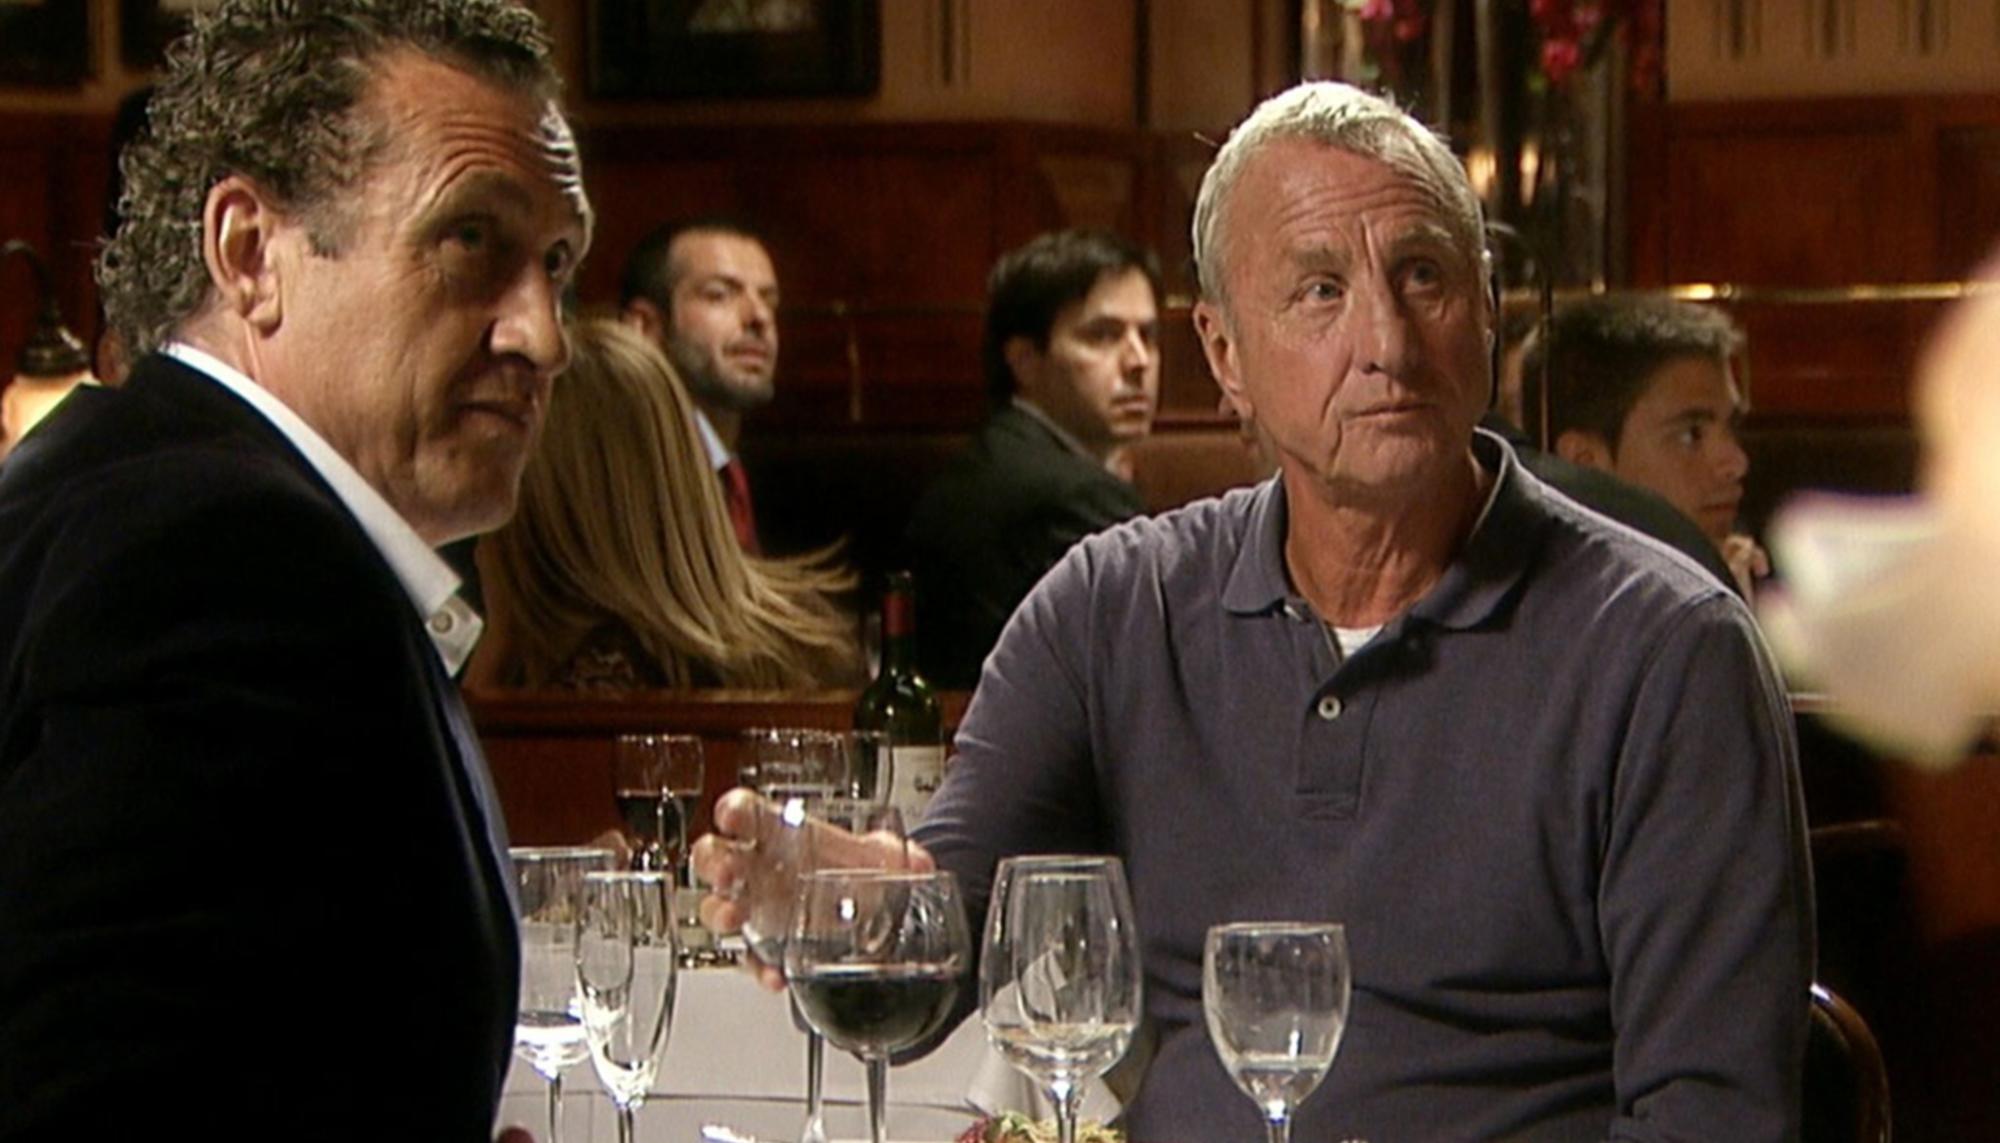 Valdano y Cruyff, en el documental 'Messi' (2014)